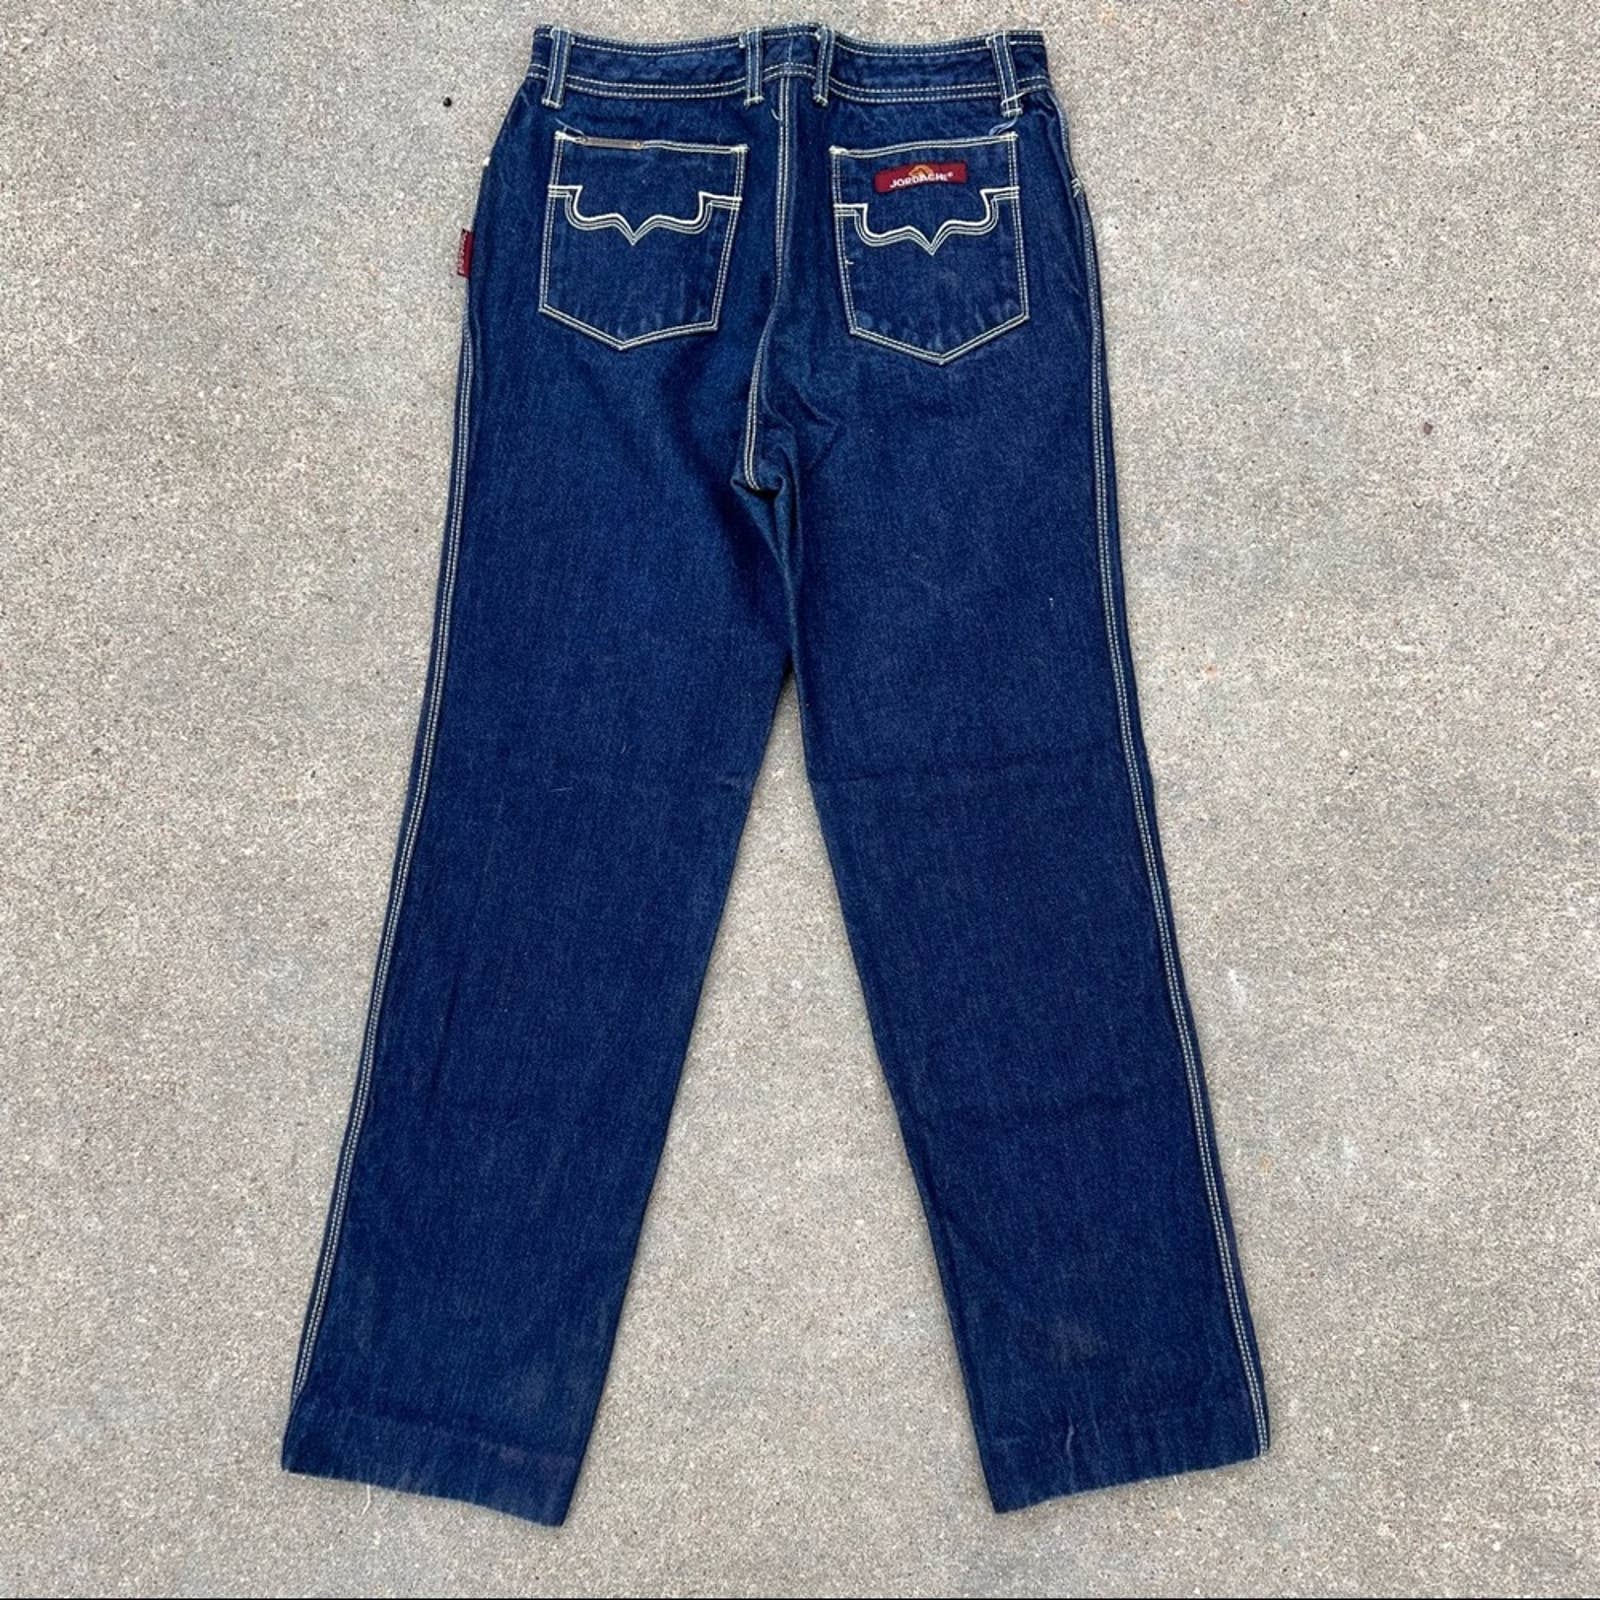 Vintage 80s Dark Wash Straight Leg Jeans by Jordache